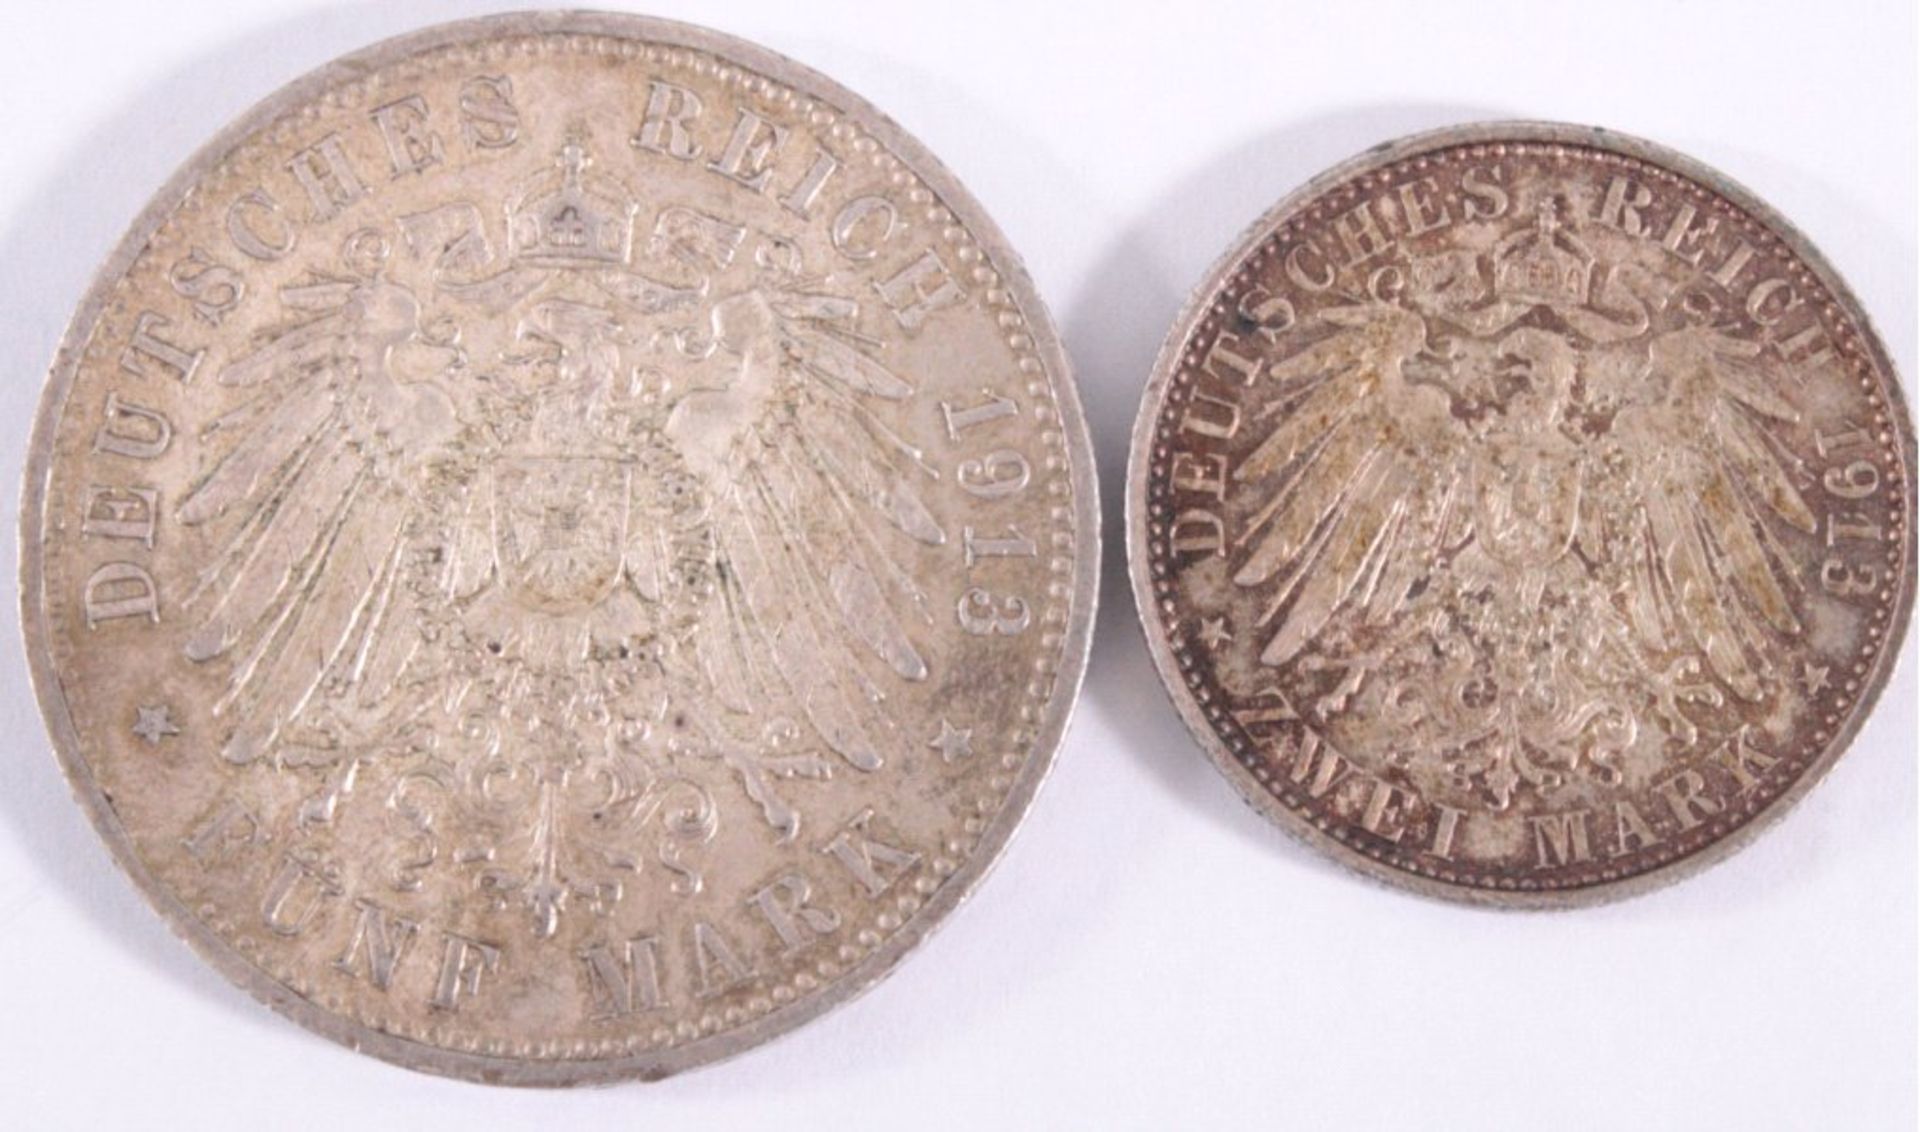 2 Münzen Kaiserreich, Preußen5 Mark Wilhelm II. 19132 Mark Wilhelm II. 1913 - Image 2 of 2